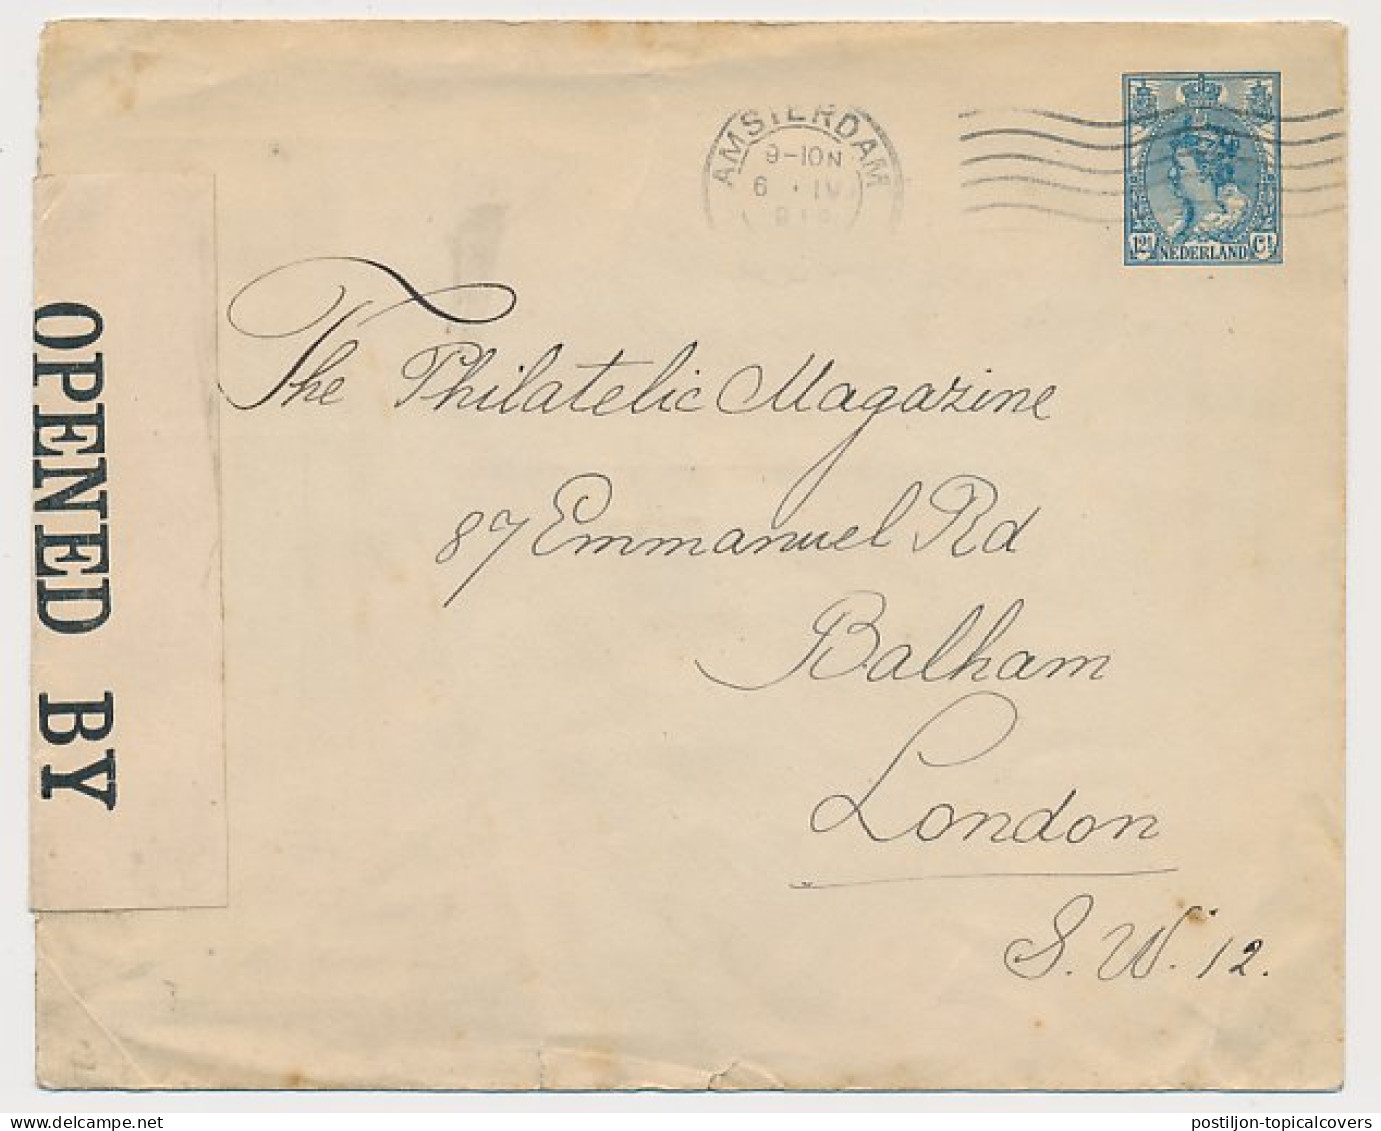 Envelop G. 19 Particulier Bedrukt Amsterdam - GB / UK 191. - Postal Stationery